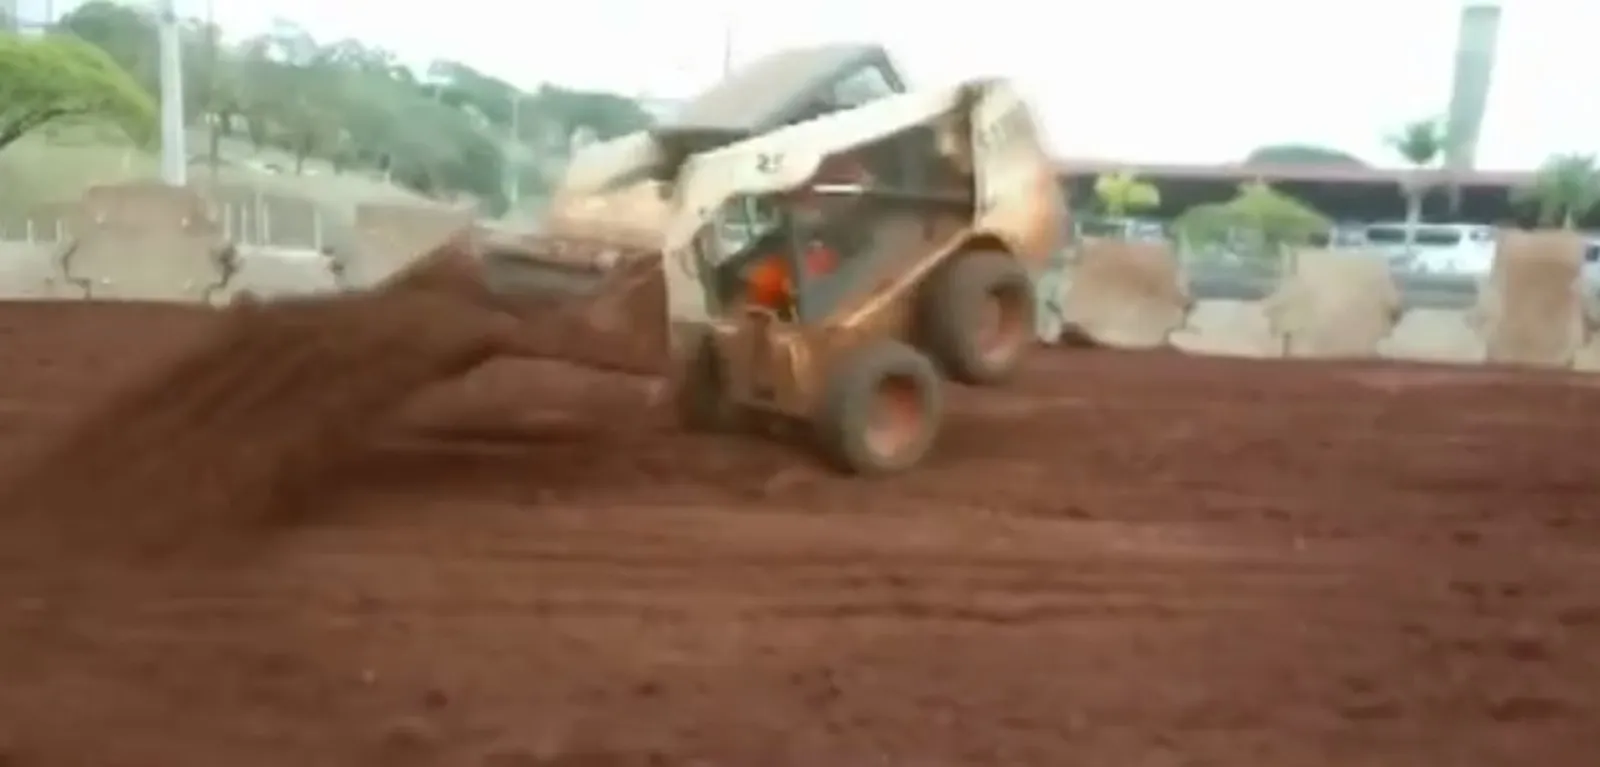 Trabalhador é demitido após fazer manobras com pá carregadeira em obra pública no Paraná; veja o vídeo 